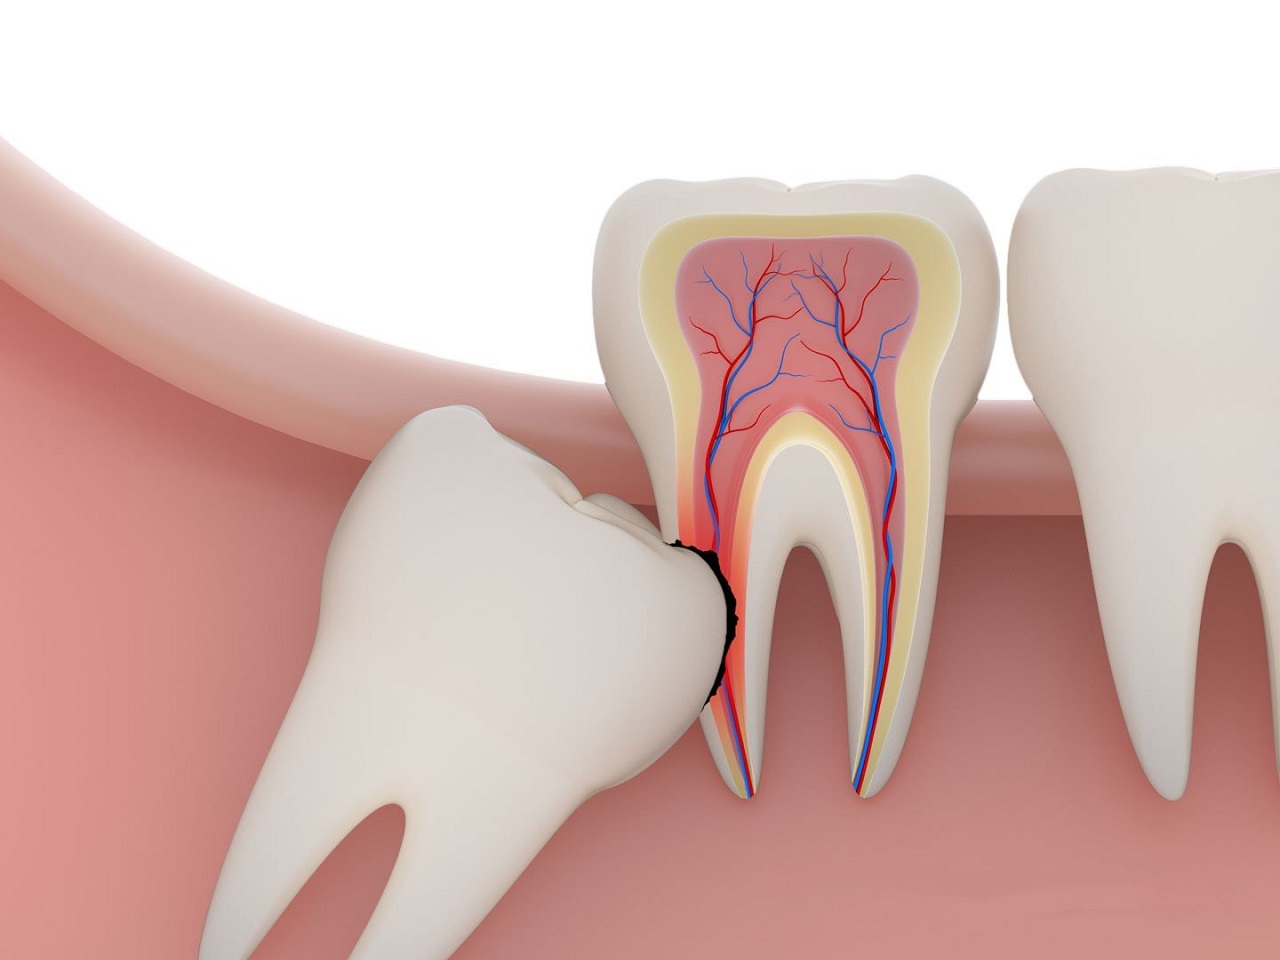 Lưu ý khi nhổ răng số 8 liên quan đến việc gì?